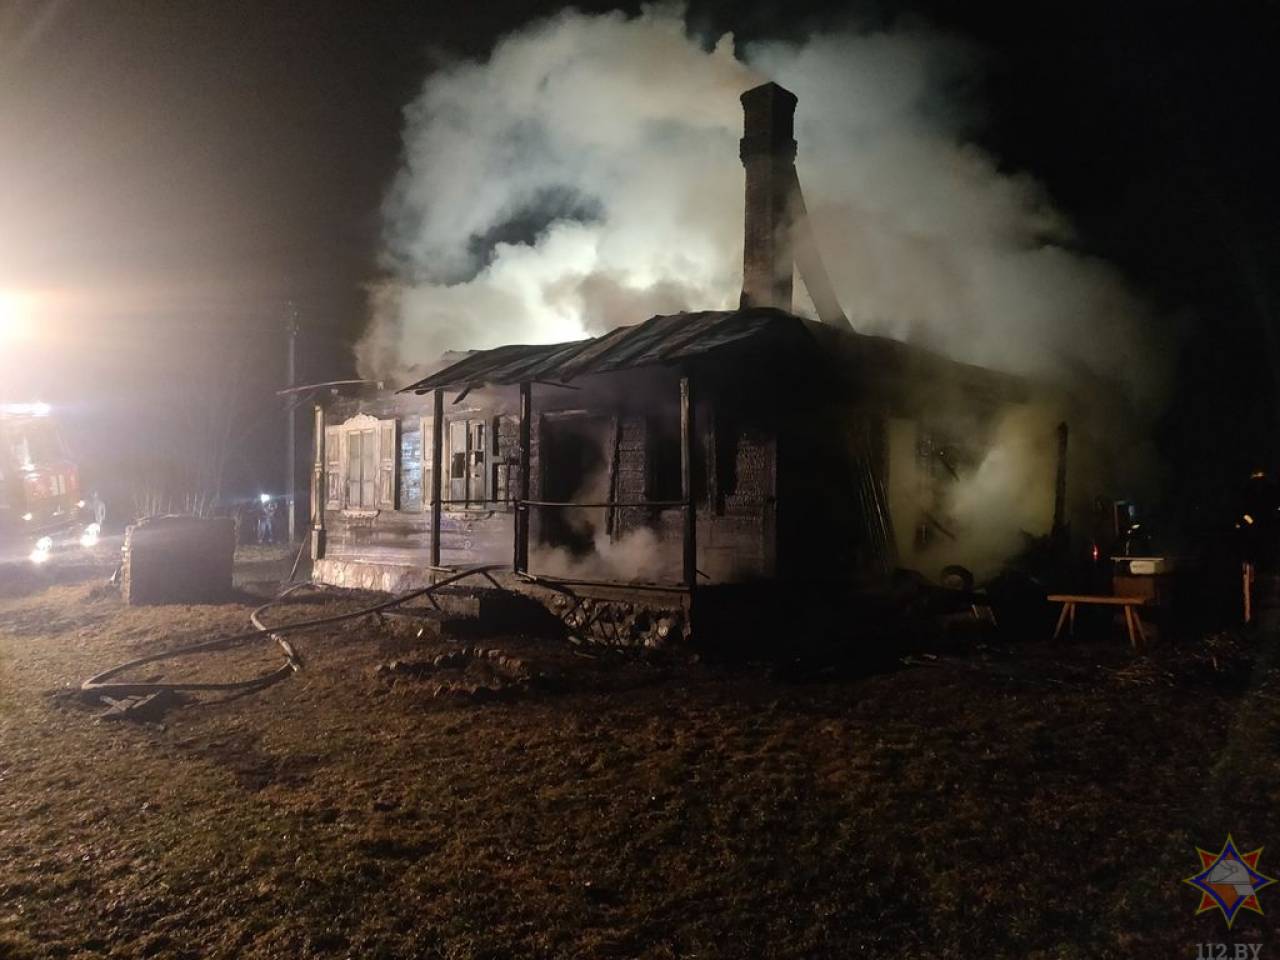 Под Гродно сгорел дом горожанина: пожар посреди ночи заметил сосед